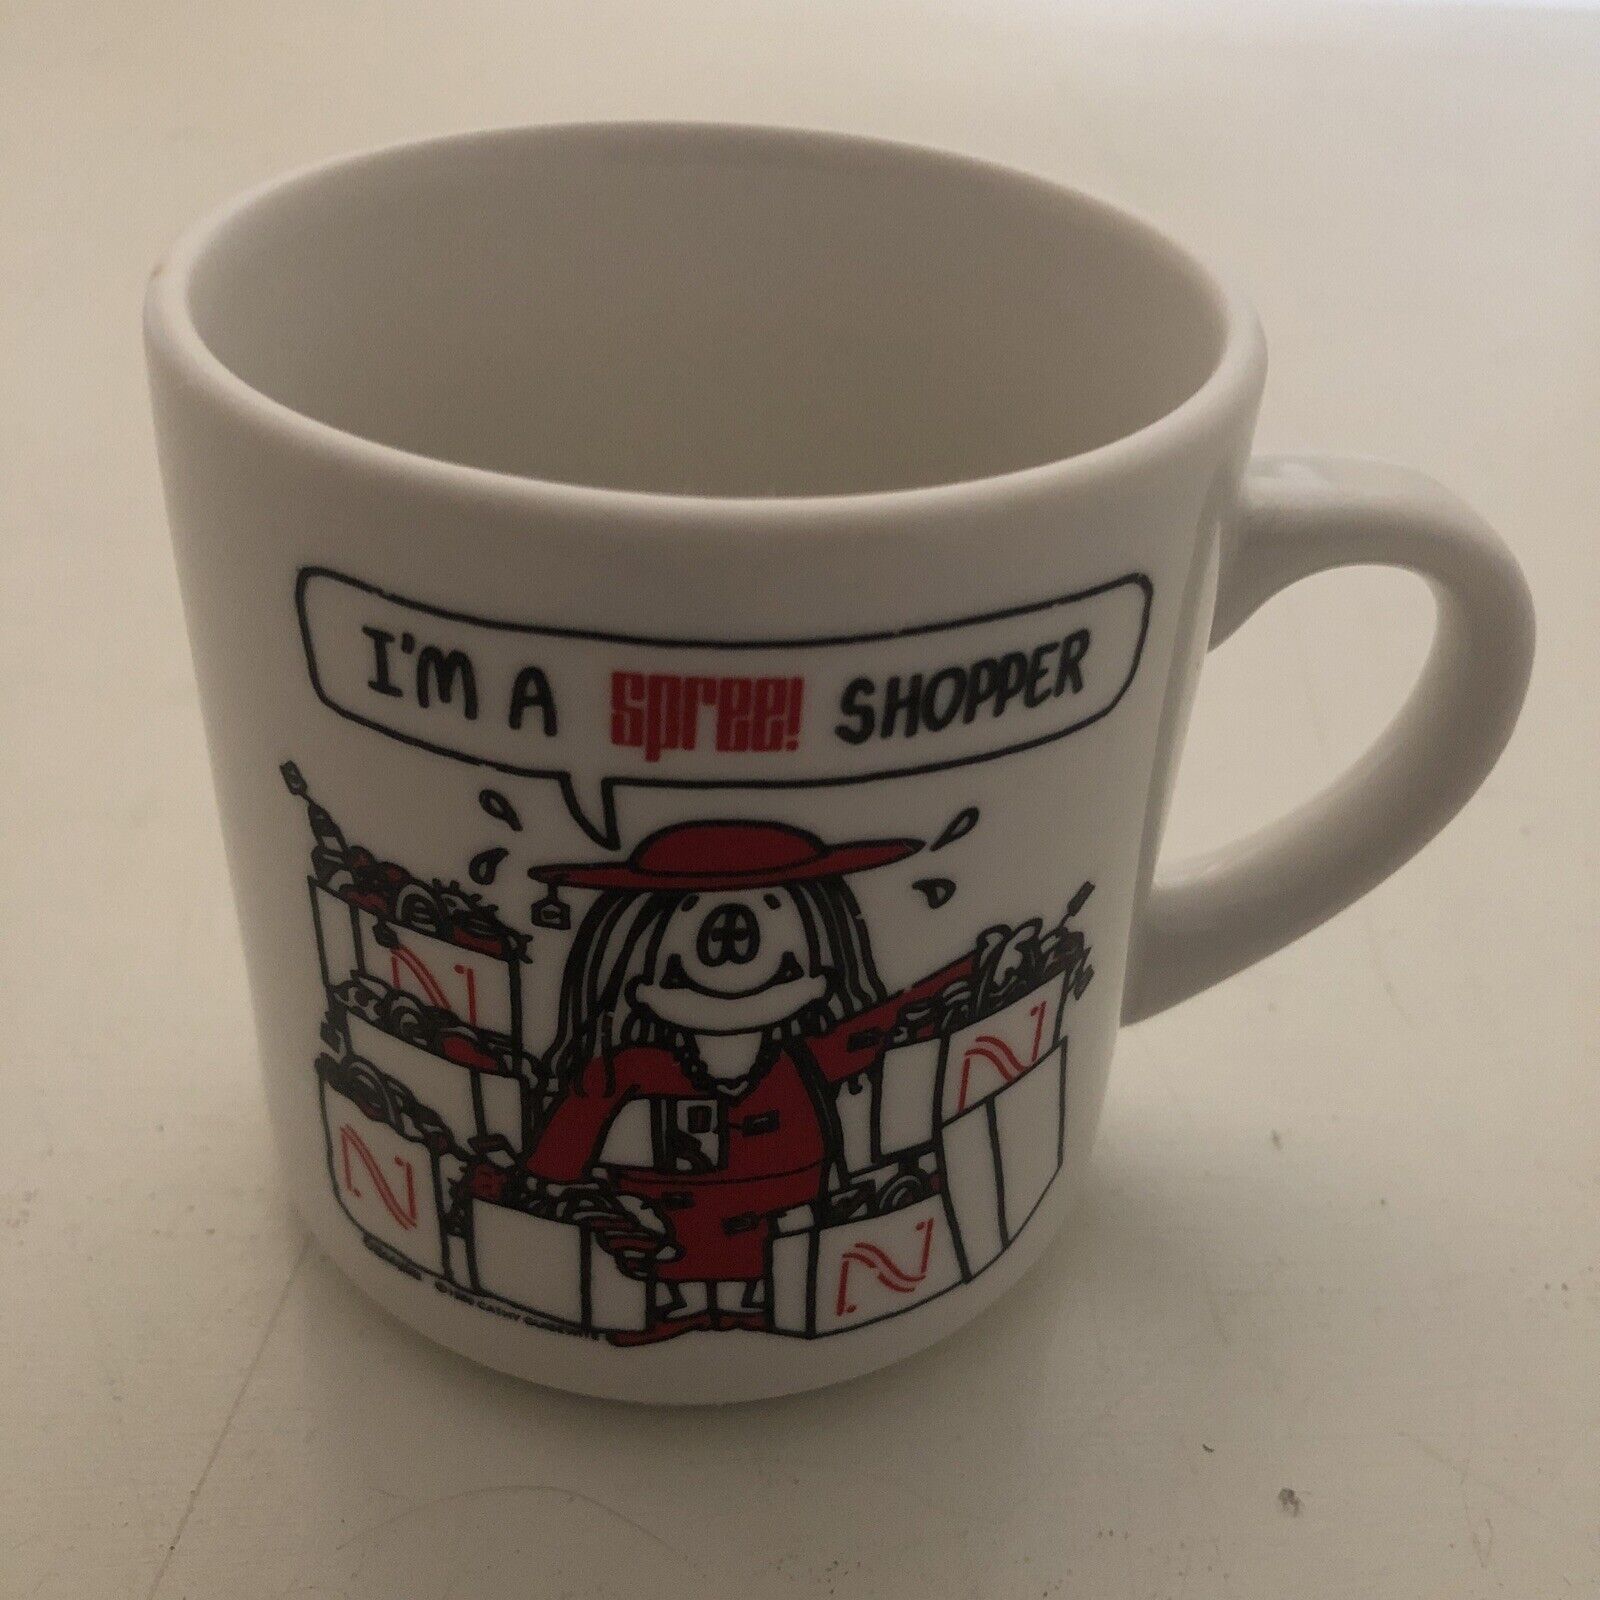 Rare Nordstrom “I’m a Spree Shopper” Coffee Mug